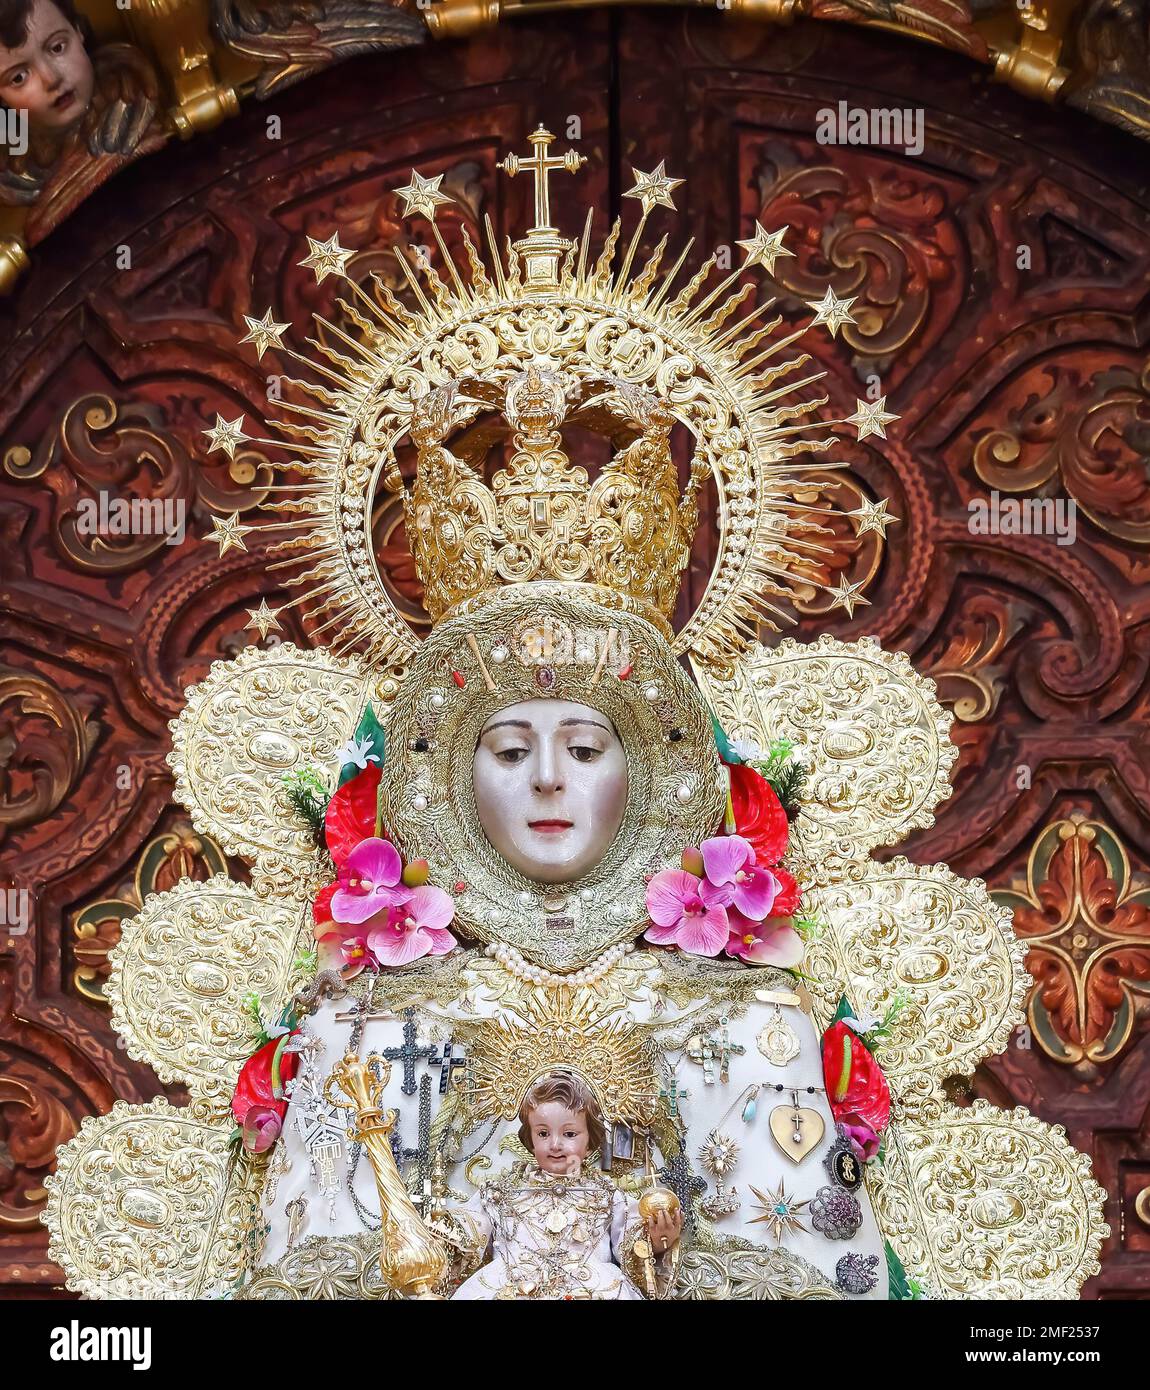 Image de la Virgen del Rocio, à l'intérieur de l'Ermita del Rocio, ermitage à Almonte, à Huelva, Espagne Banque D'Images